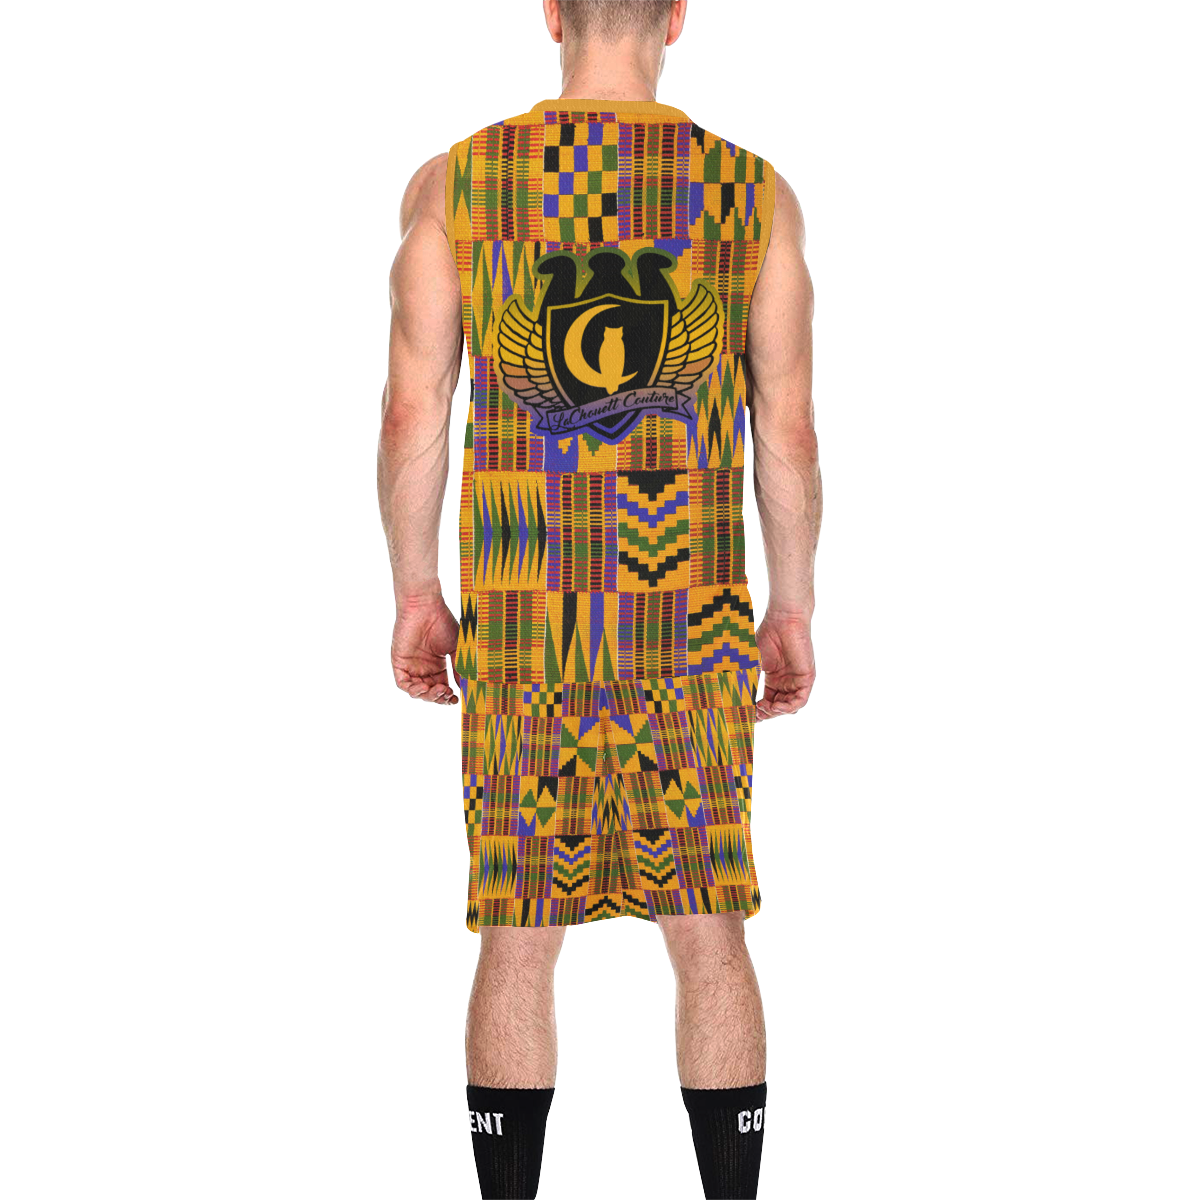 KENTE ATEF All Over Print Basketball Uniform